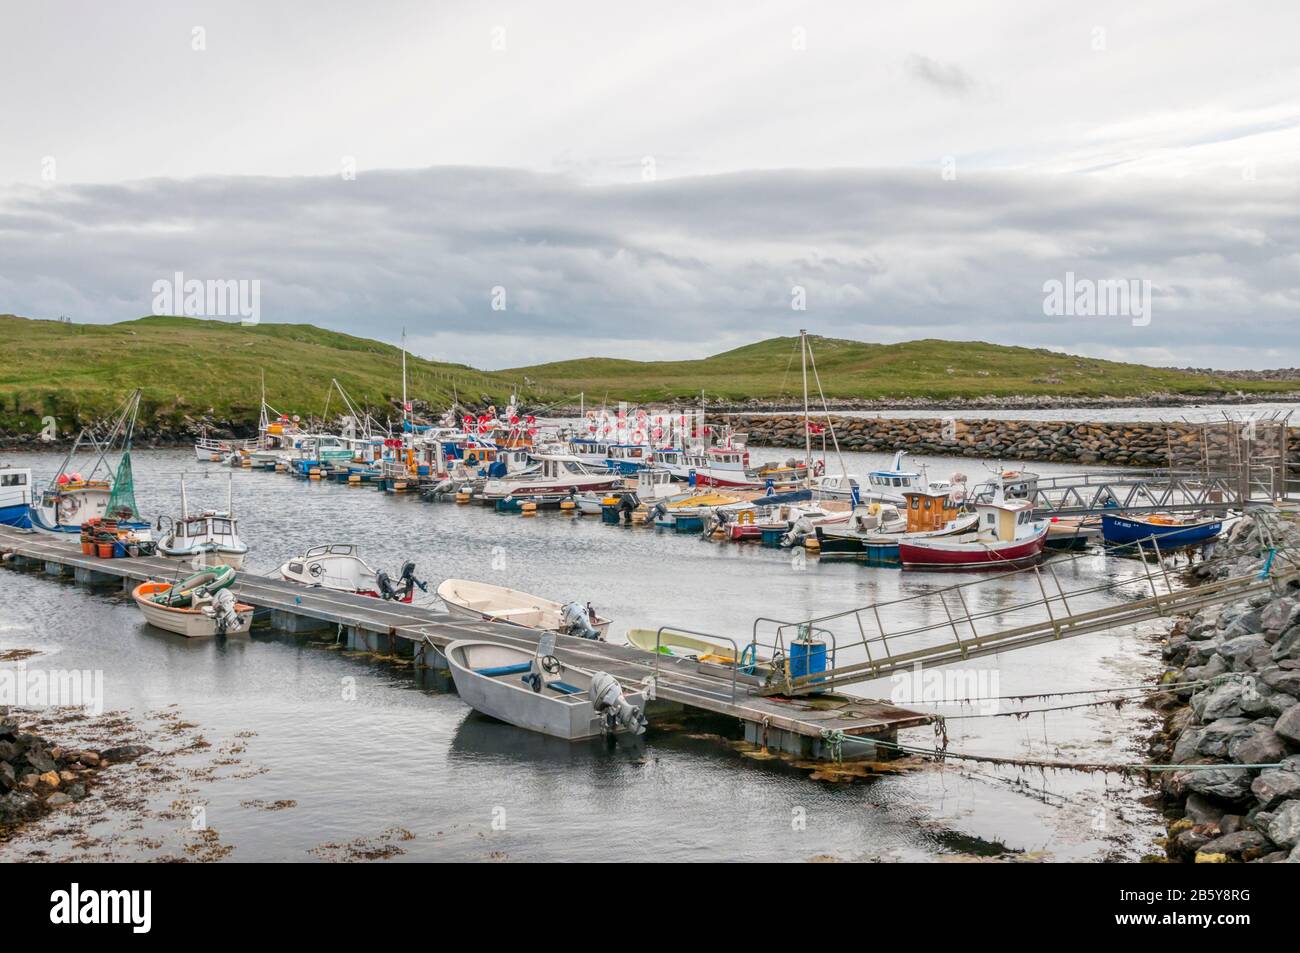 Il porto del piccolo insediamento di Hamnavoe sull'isola di Burra occidentale al largo della terraferma di Shetland. Foto Stock